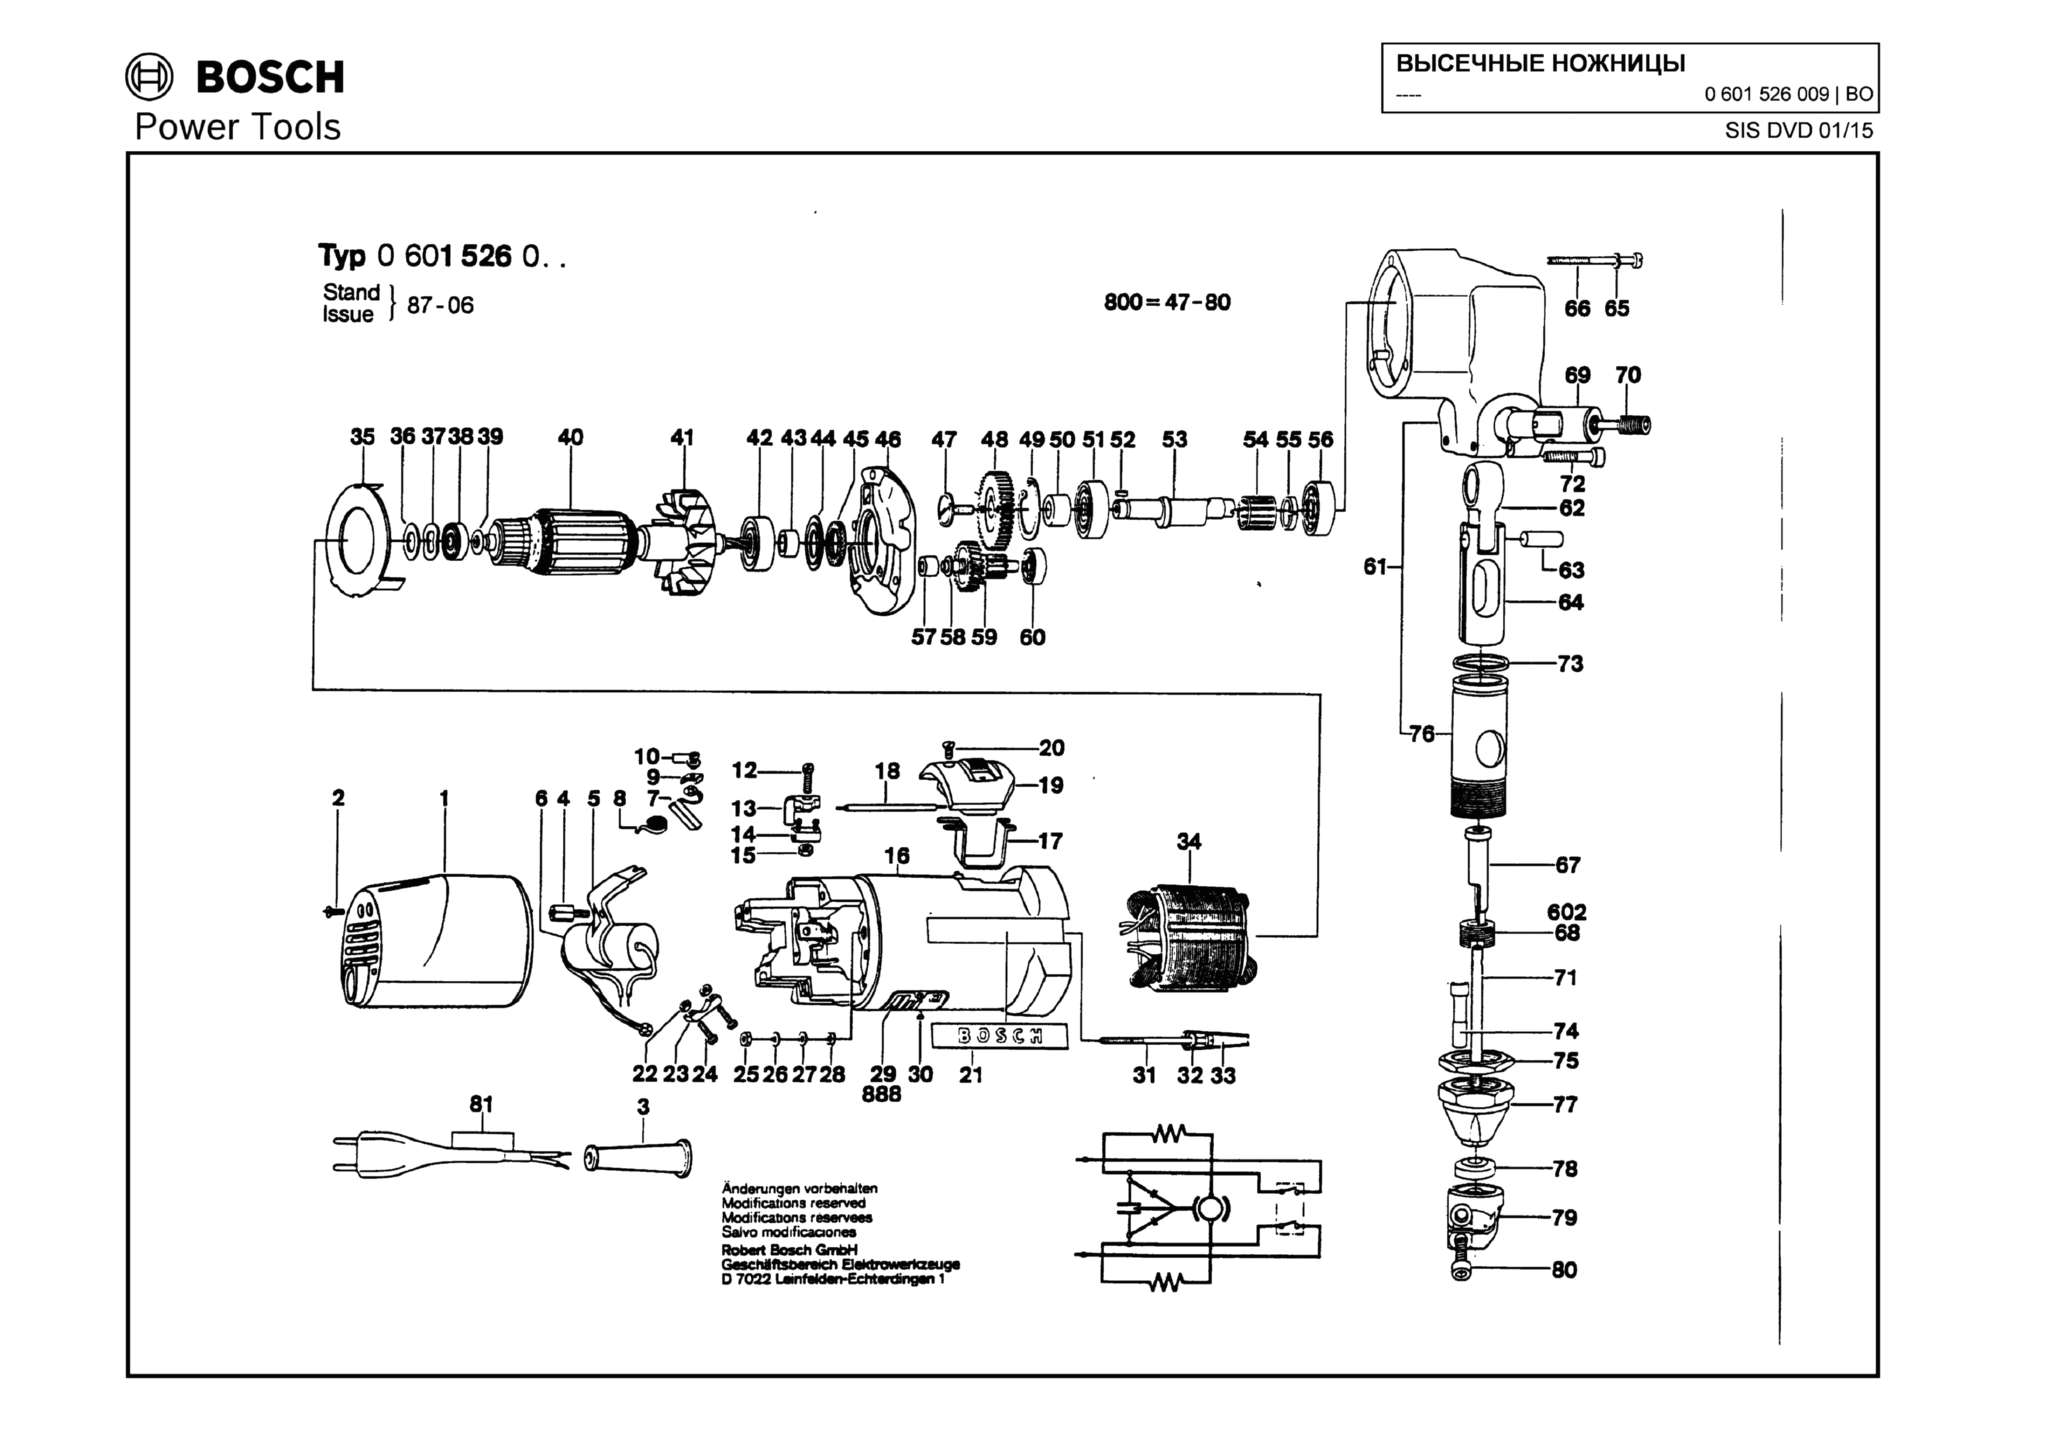 Запчасти, схема и деталировка Bosch (ТИП 0601526009)